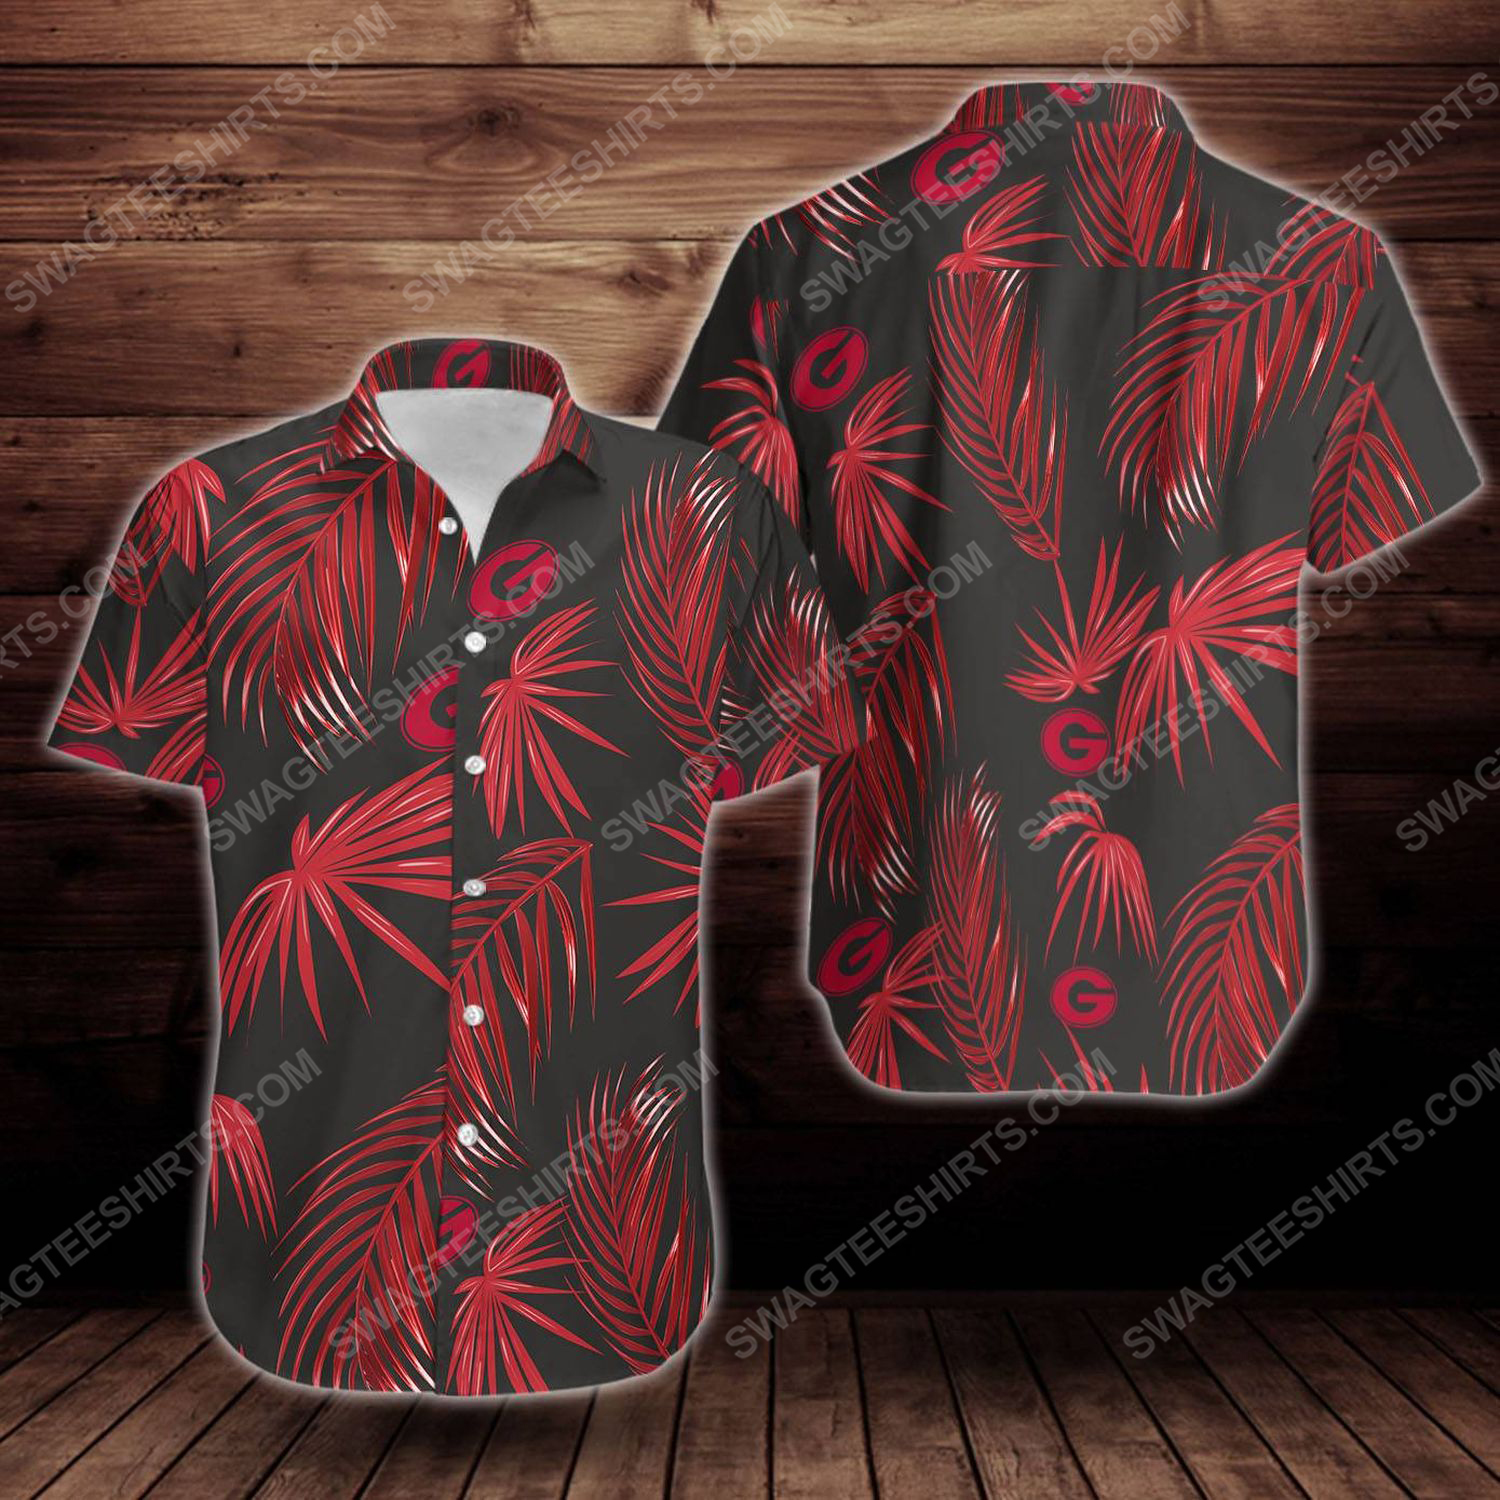 Tropical summer georgia bulldogs short sleeve hawaiian shirt 1